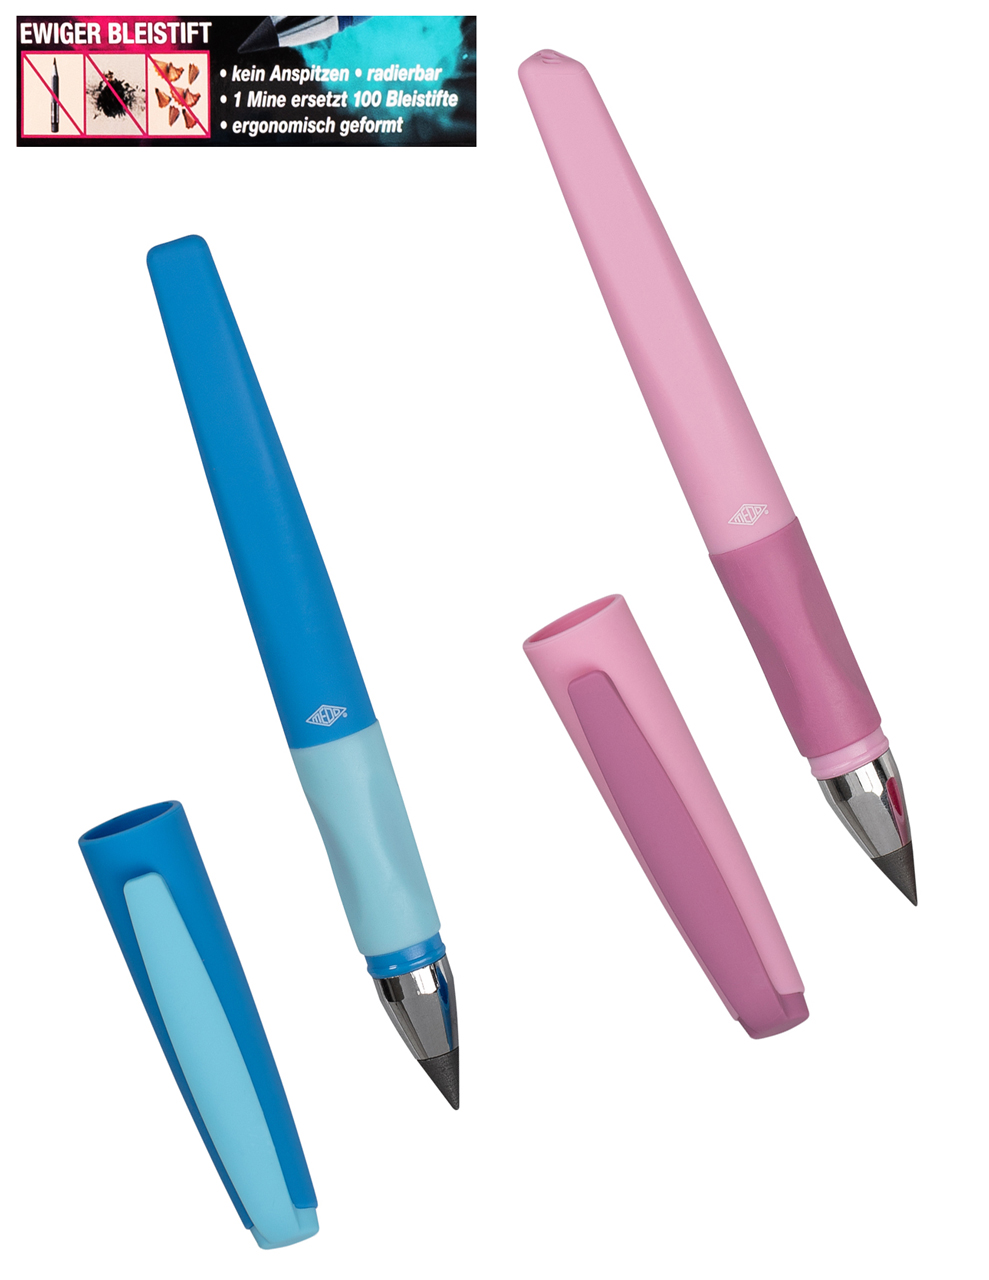 Wedo-ewiger-Bleistift-blau-rosa-Forever-Pointy-HB-421299-kaufen-lafueliki